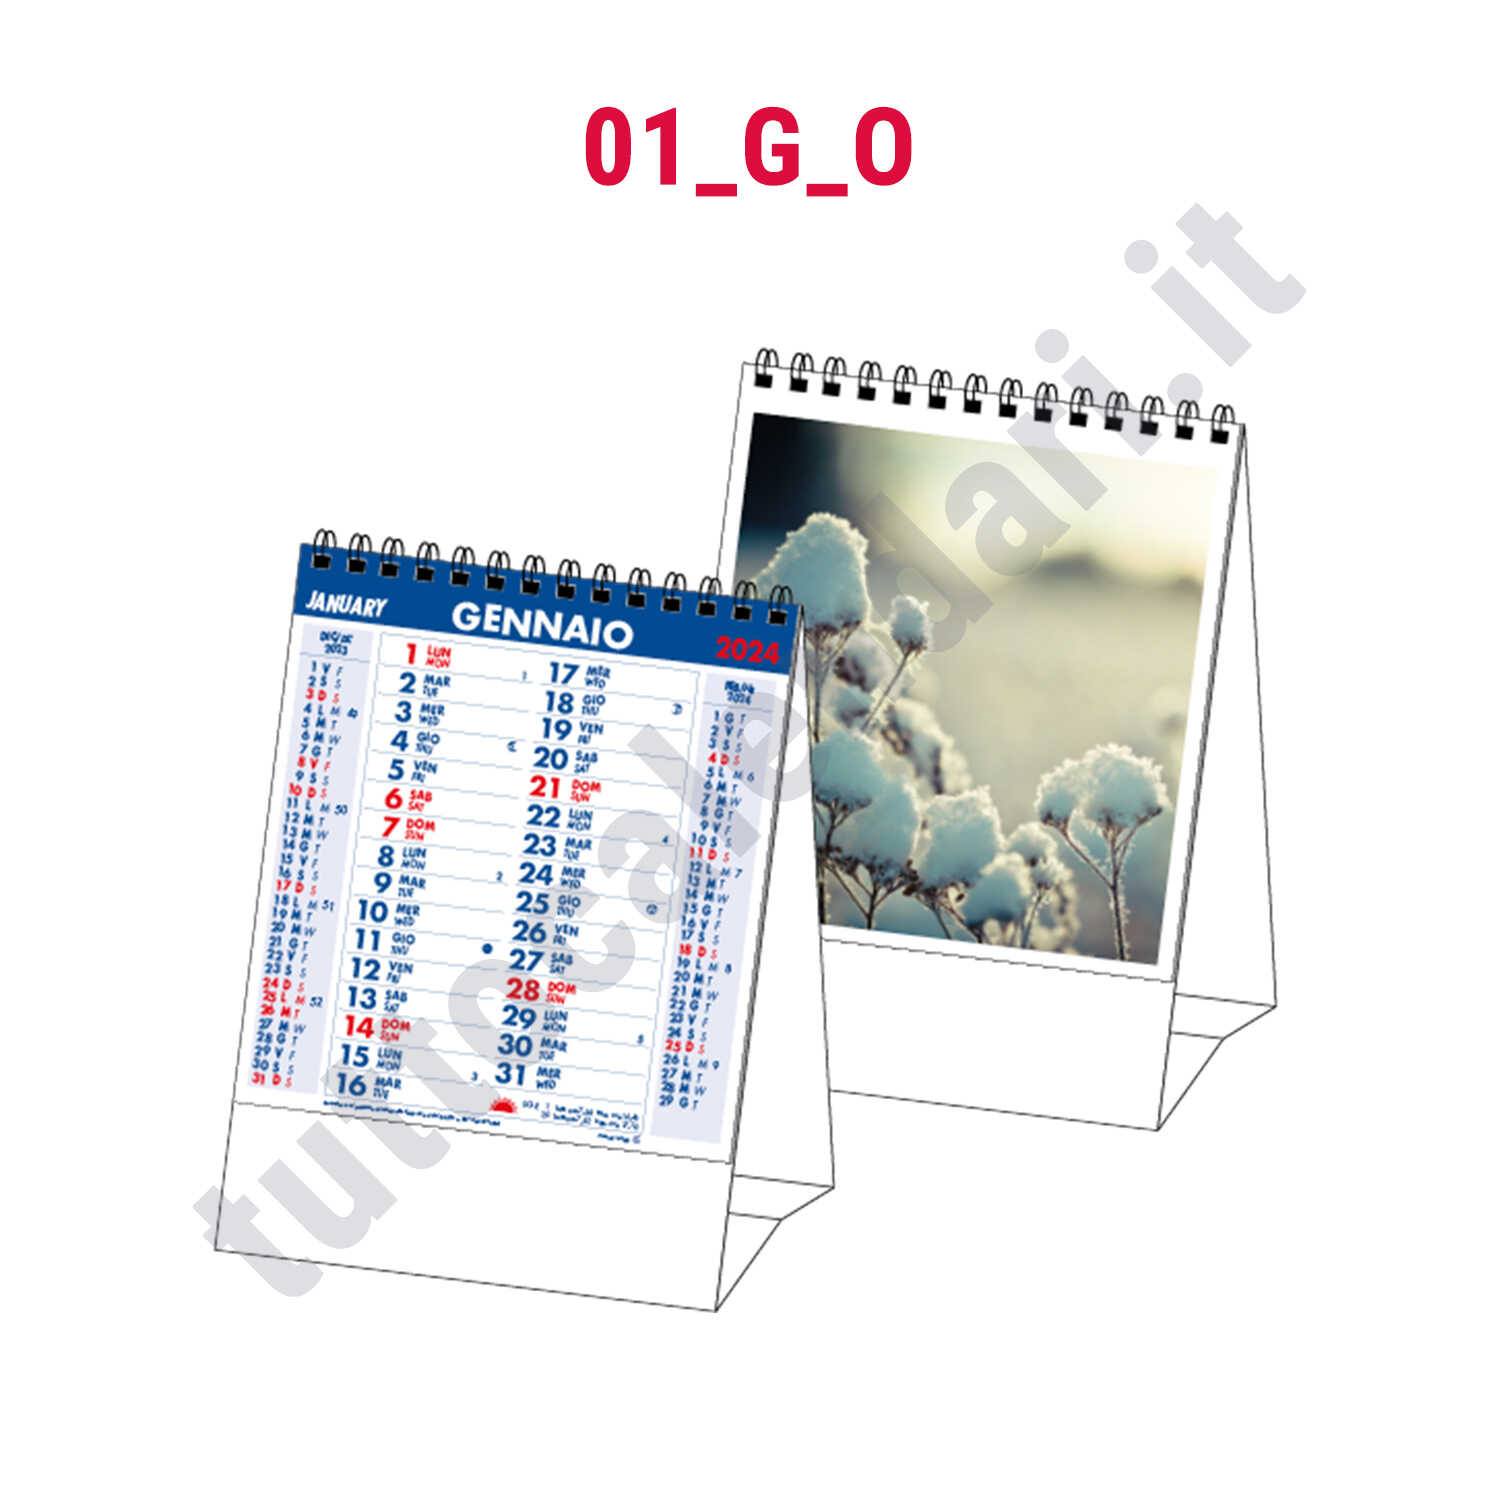 Stampa calendario verticale con immagini